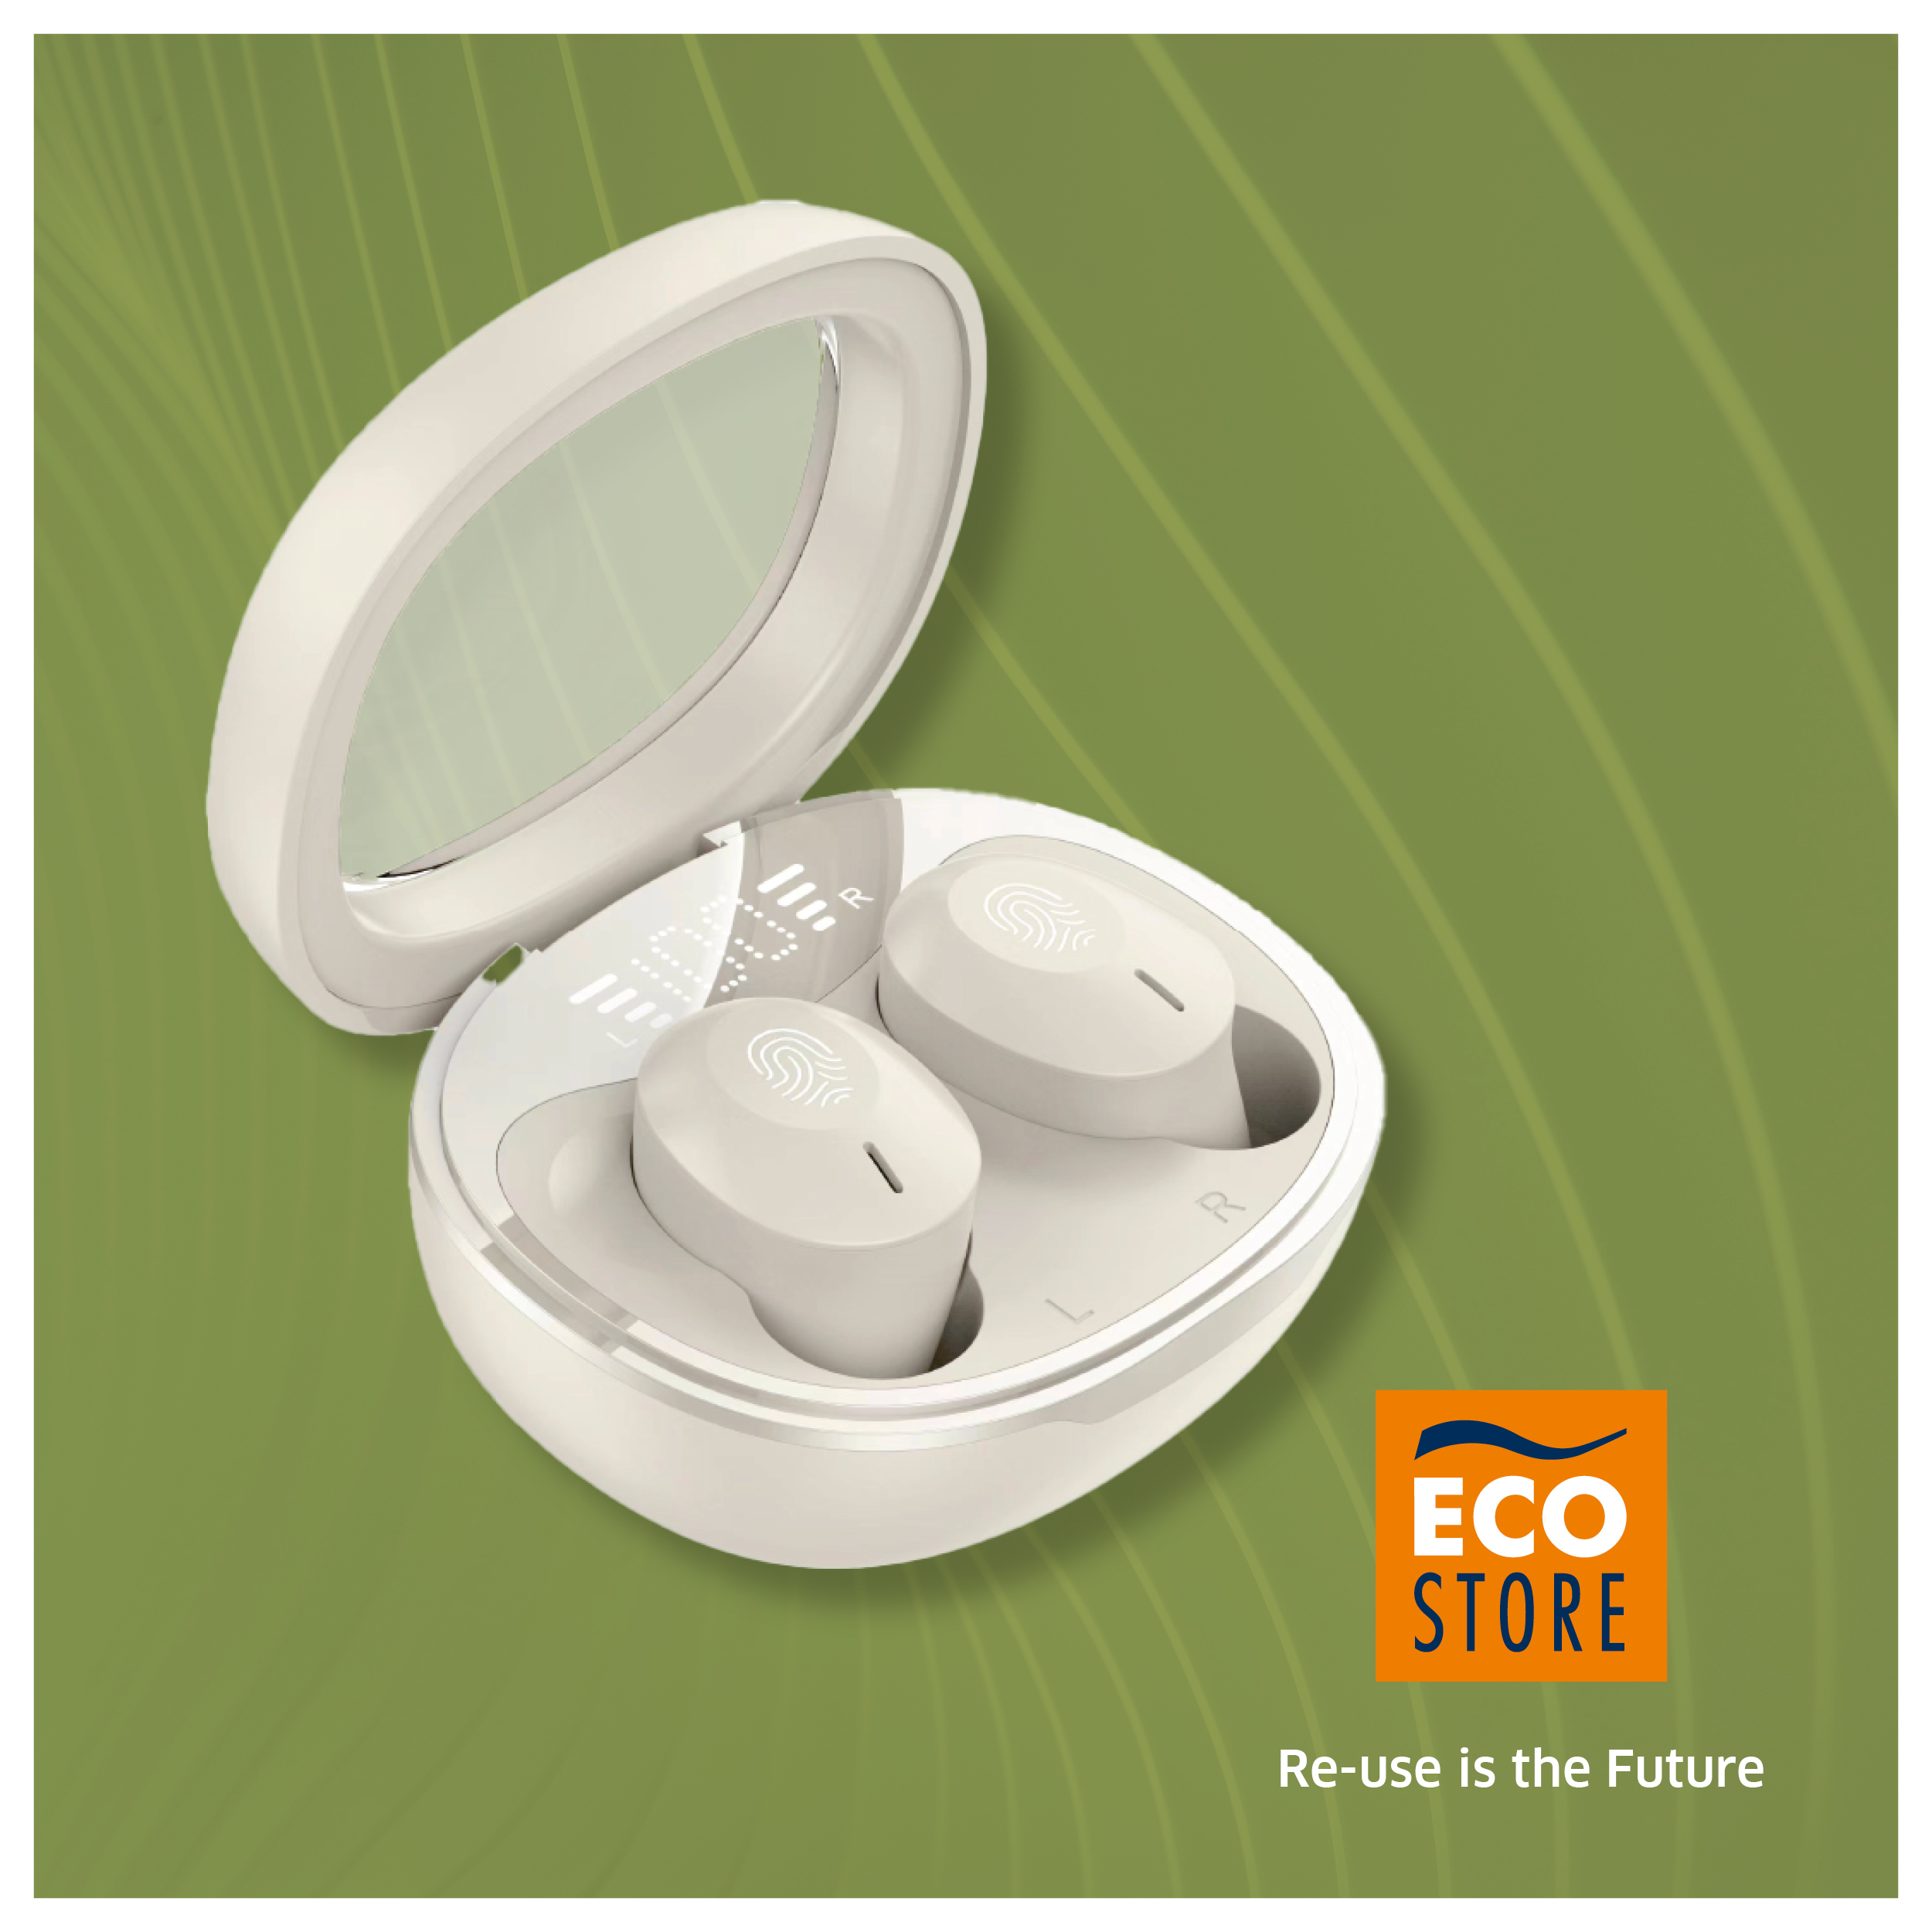 Auricolari Stereo Wireless bianchi in omaggio con prodotti Eco Store